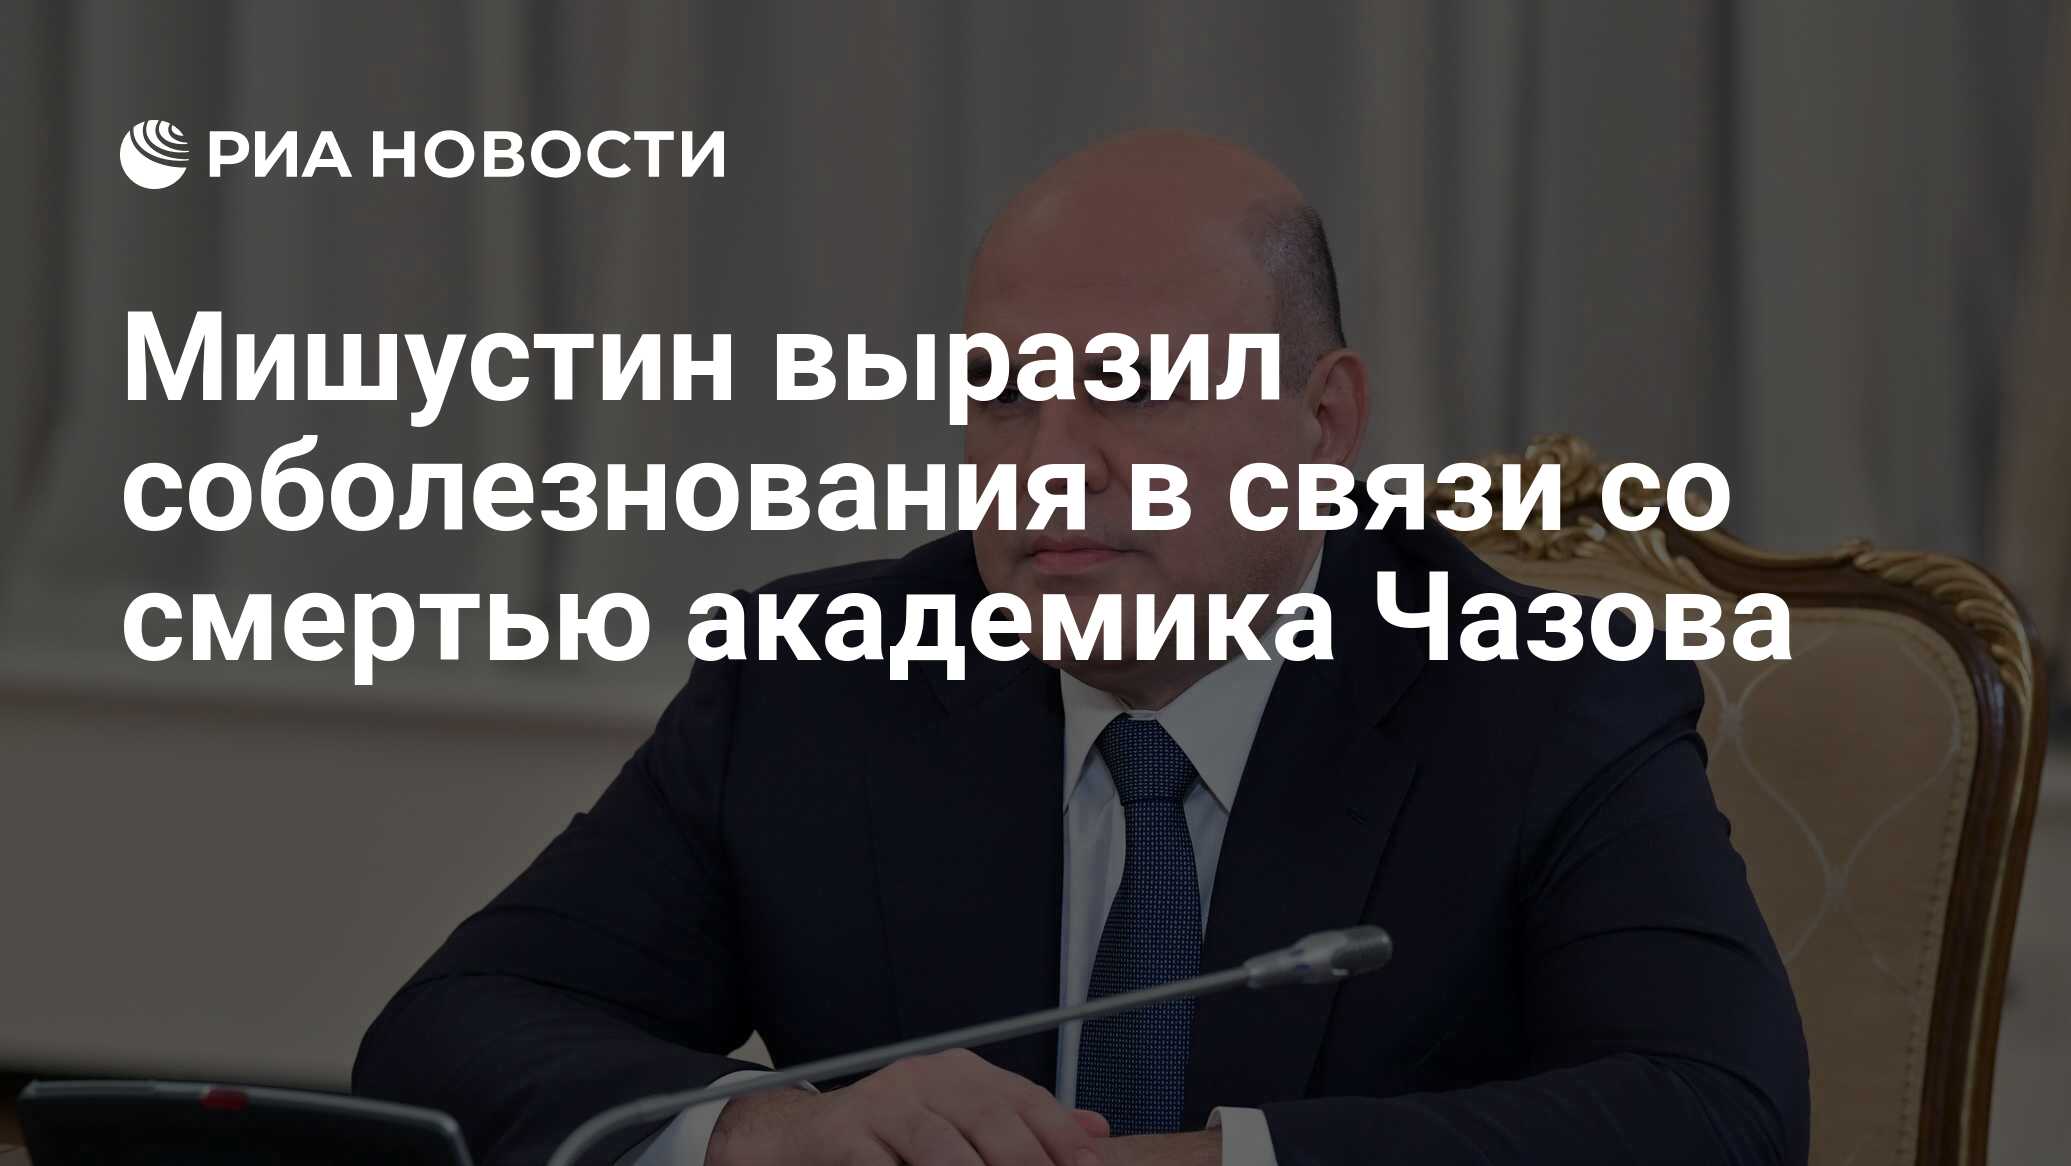 Мишустин выразил соболезнования в связи со смертью Бориса Добродеева. Мишустин приехал в Китай. Китай выразил соболезнования россии